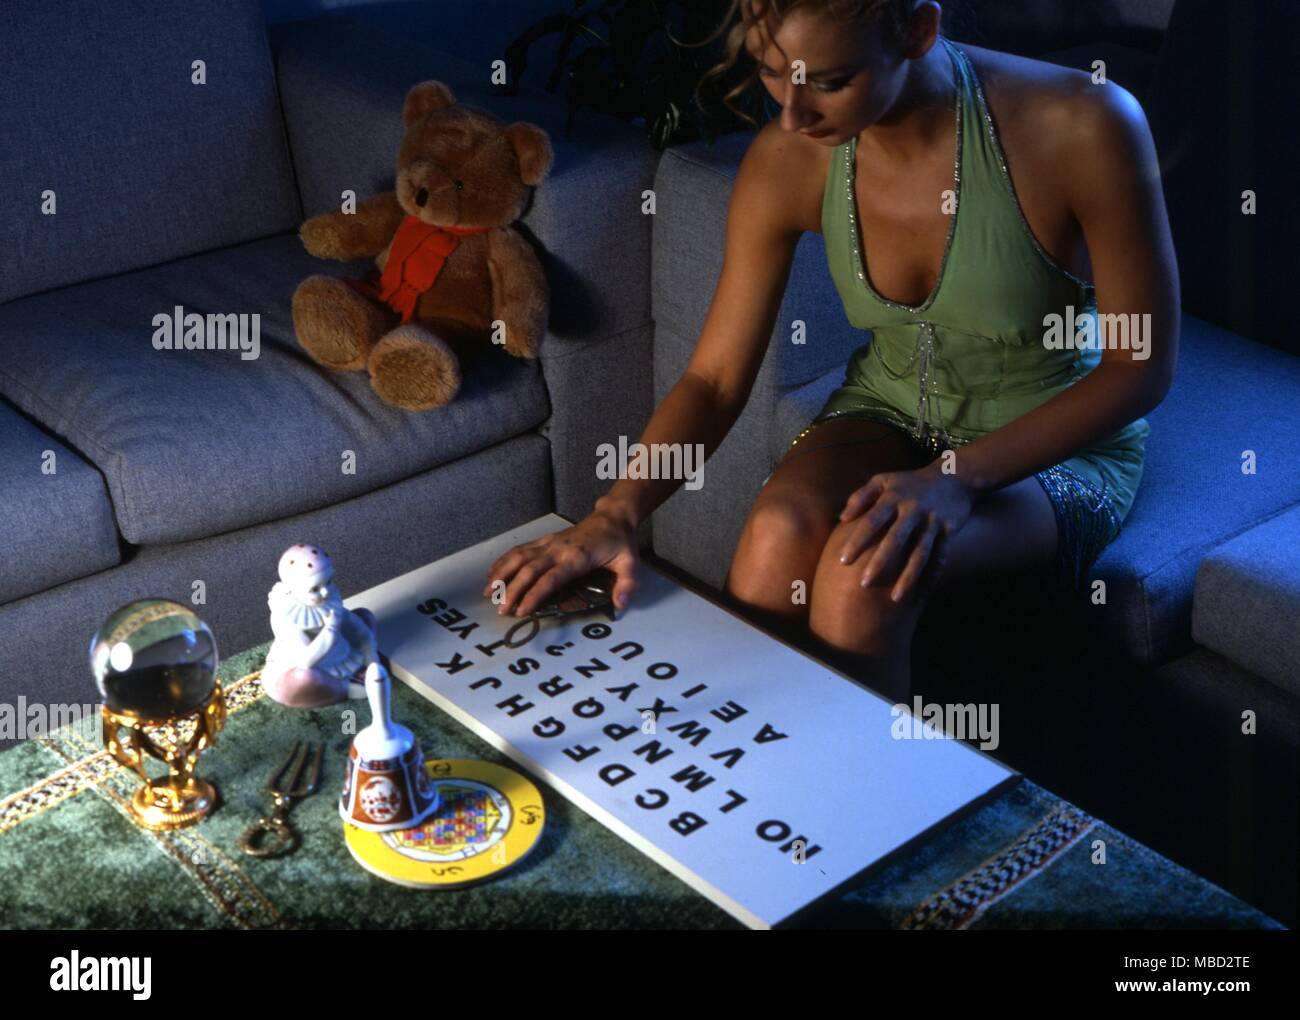 Ouija - Junge Mädchen mit der planchette auf einem Ouija Brett - ©/CW Stockfoto